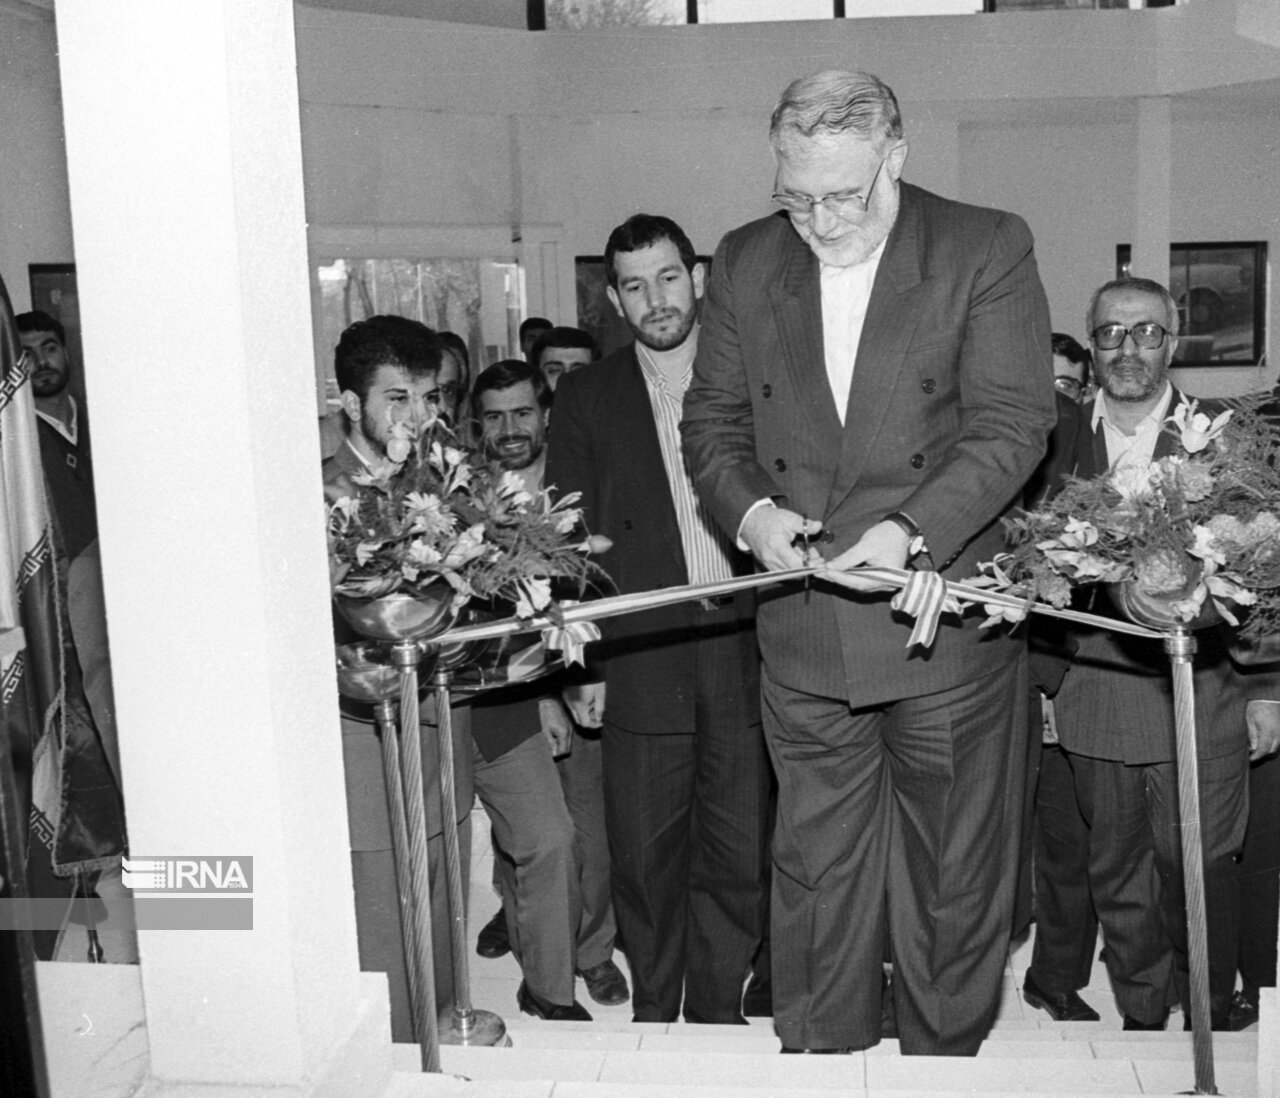 افتتاح موسسه رسانه های تصویری وزارت فرهنگ و ارشاد اسلامی